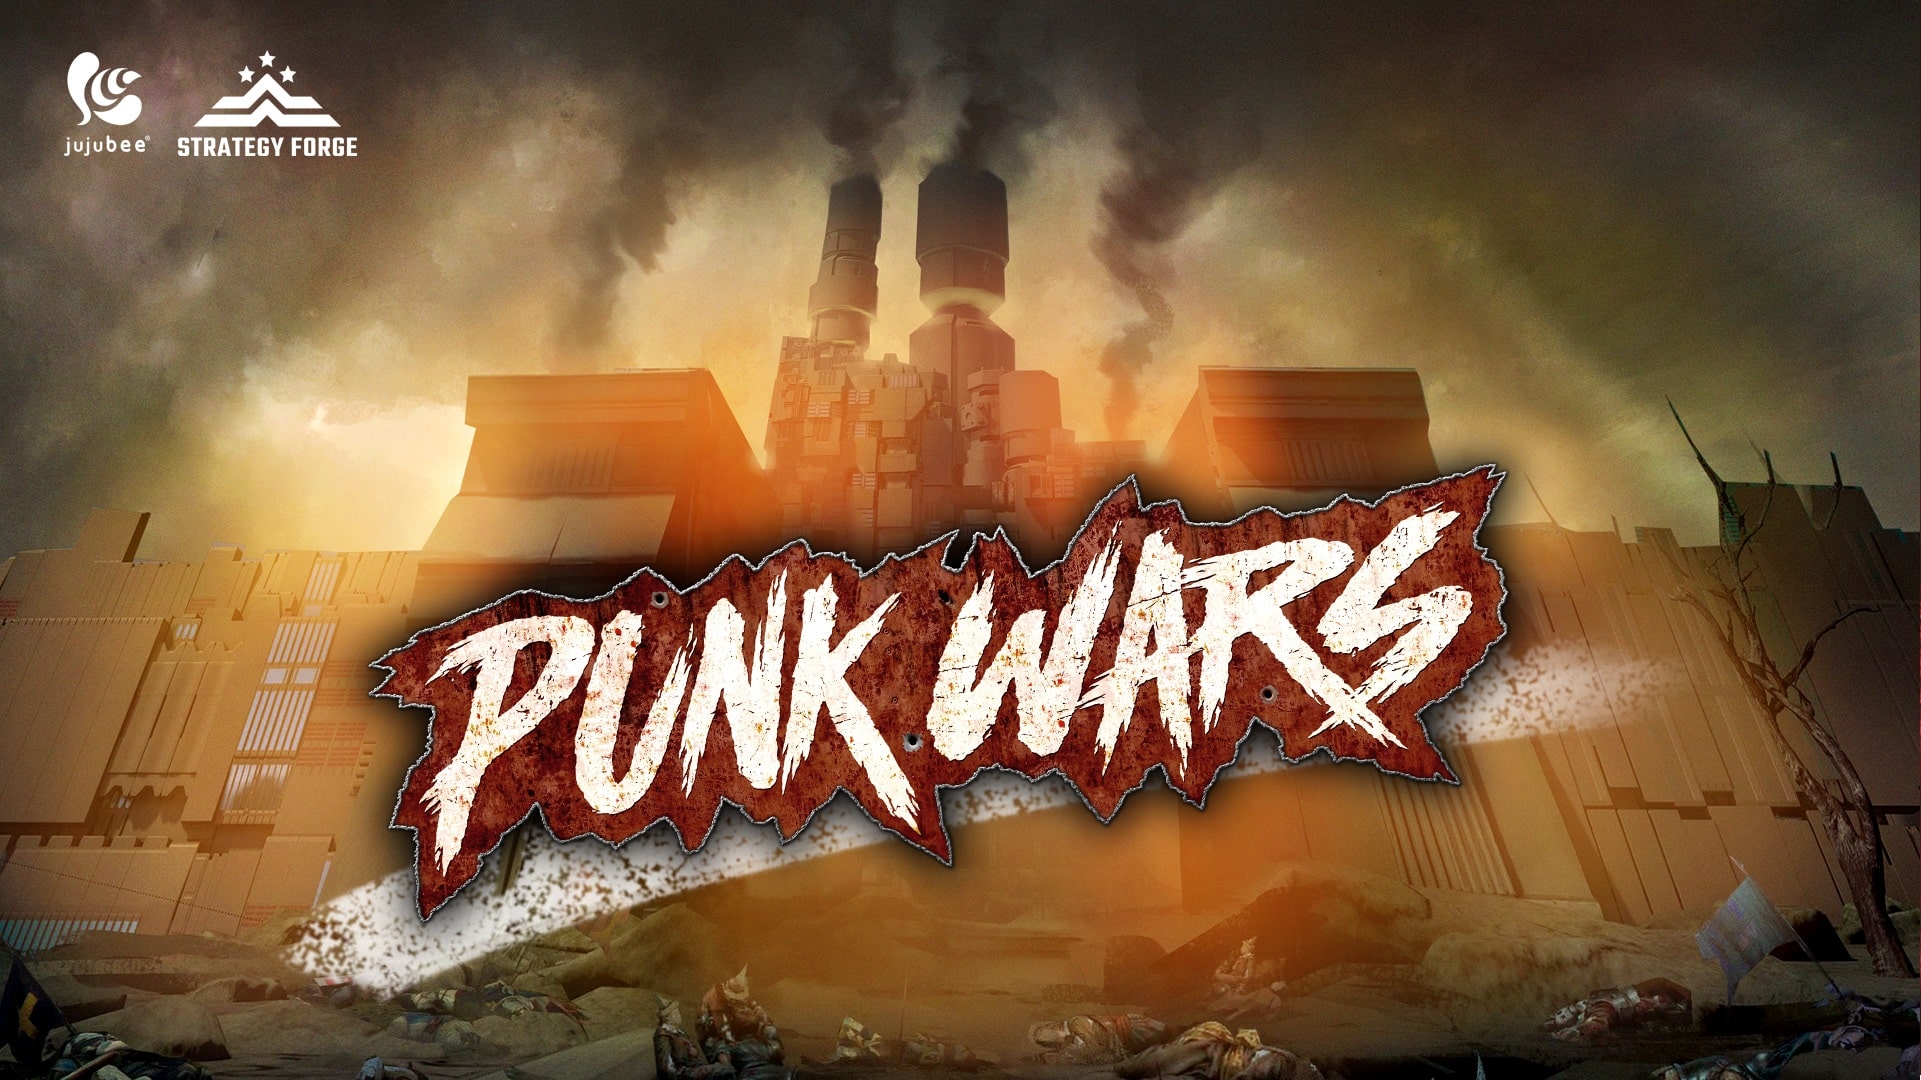 Punk wars agora disponível via steam e gog. Com | b022a107 punk3 | super robot wars | super robot wars super robot wars